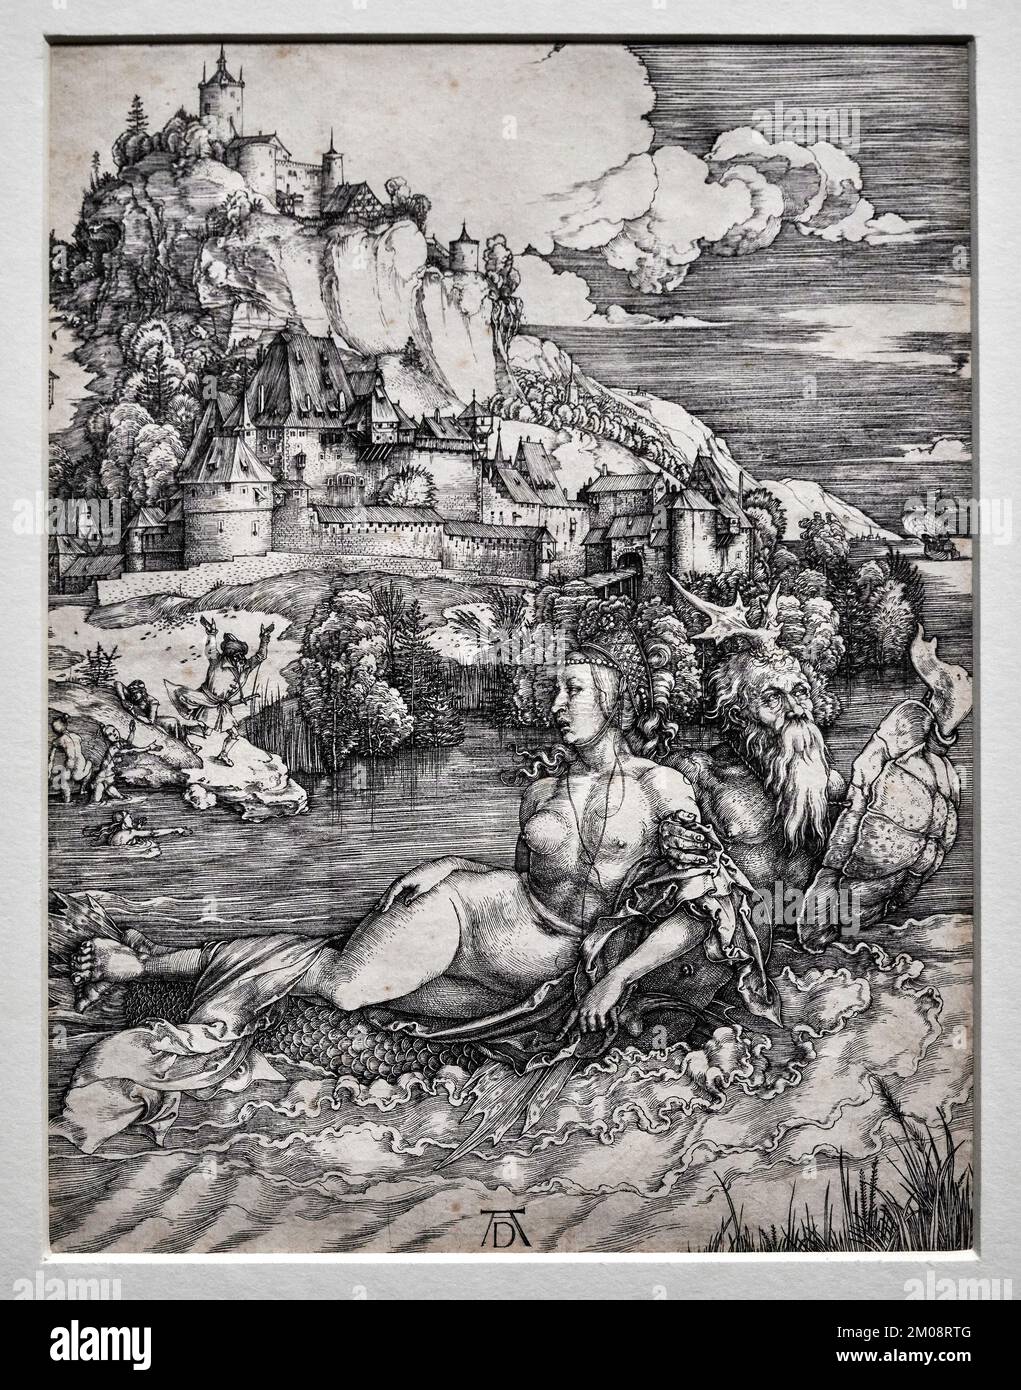 Il mostro marino - bulino - Albrecht Durer - 1498 - Roma, Istituto Centrale per la Grafica Banque D'Images